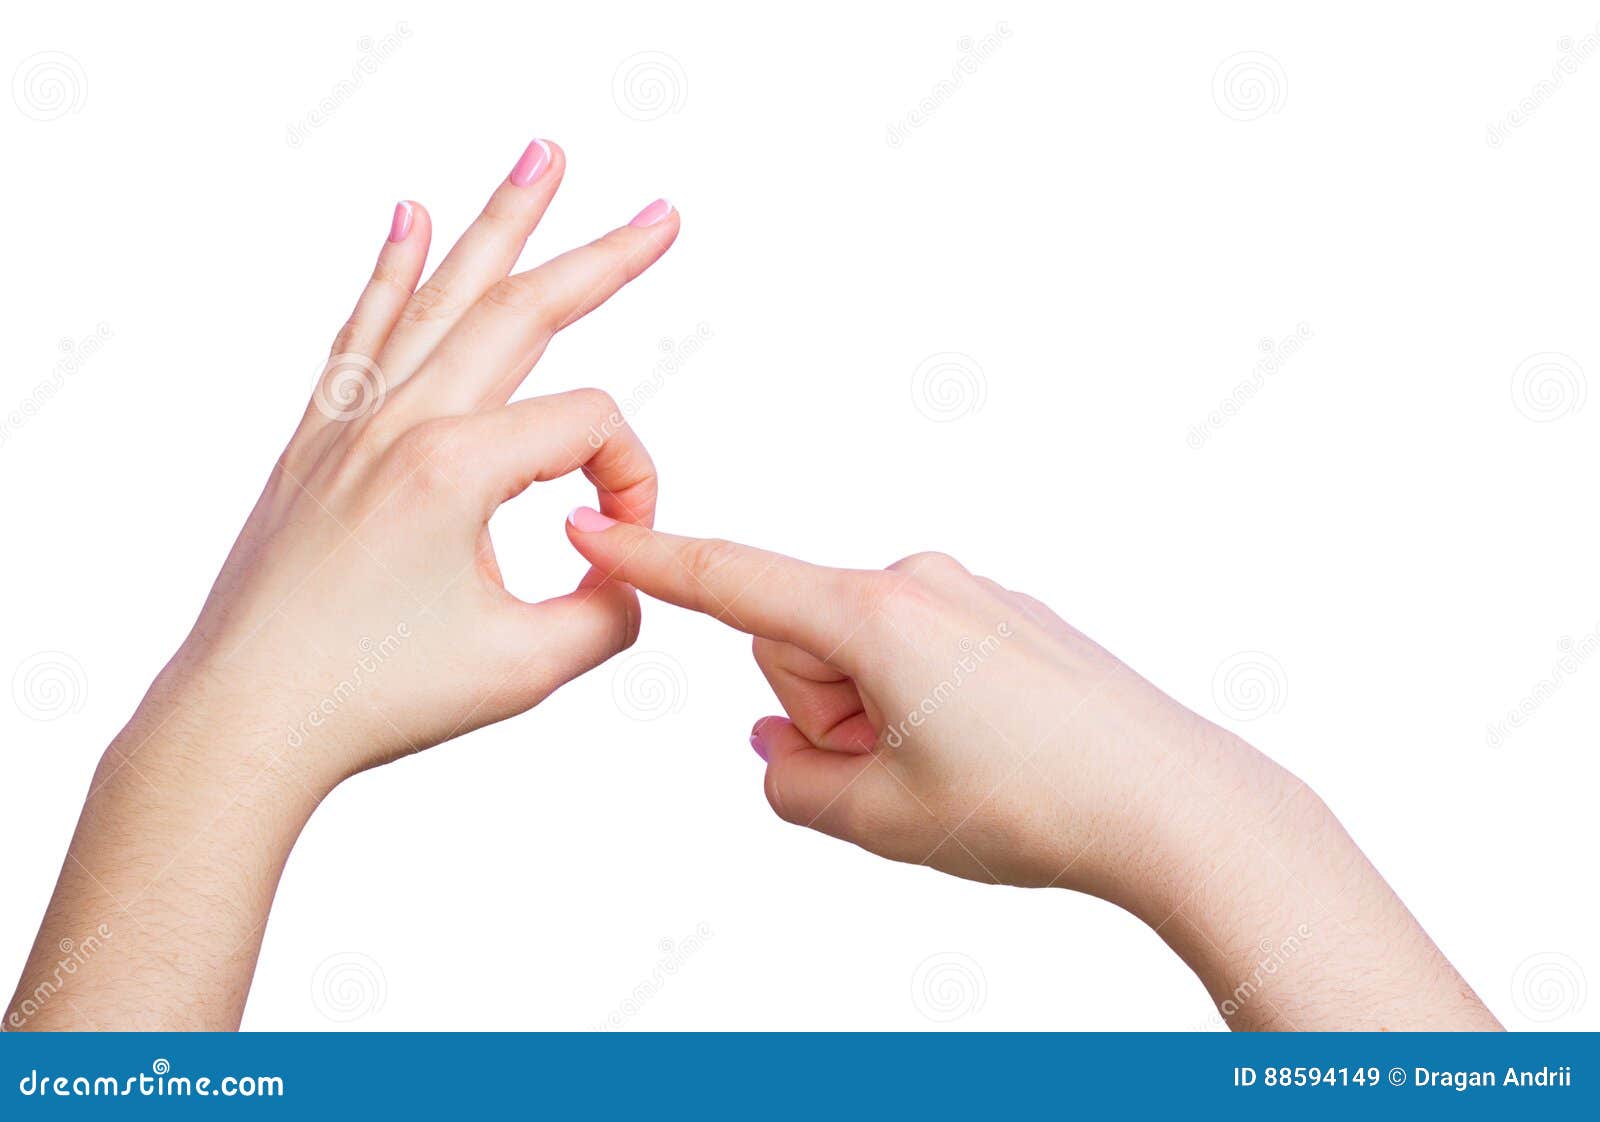 Раз изолировано. Палец в кольцо из пальцев. Кружок из пальцев. Кольцо пальцами жест. Палец в кольцо из пальцев жест.